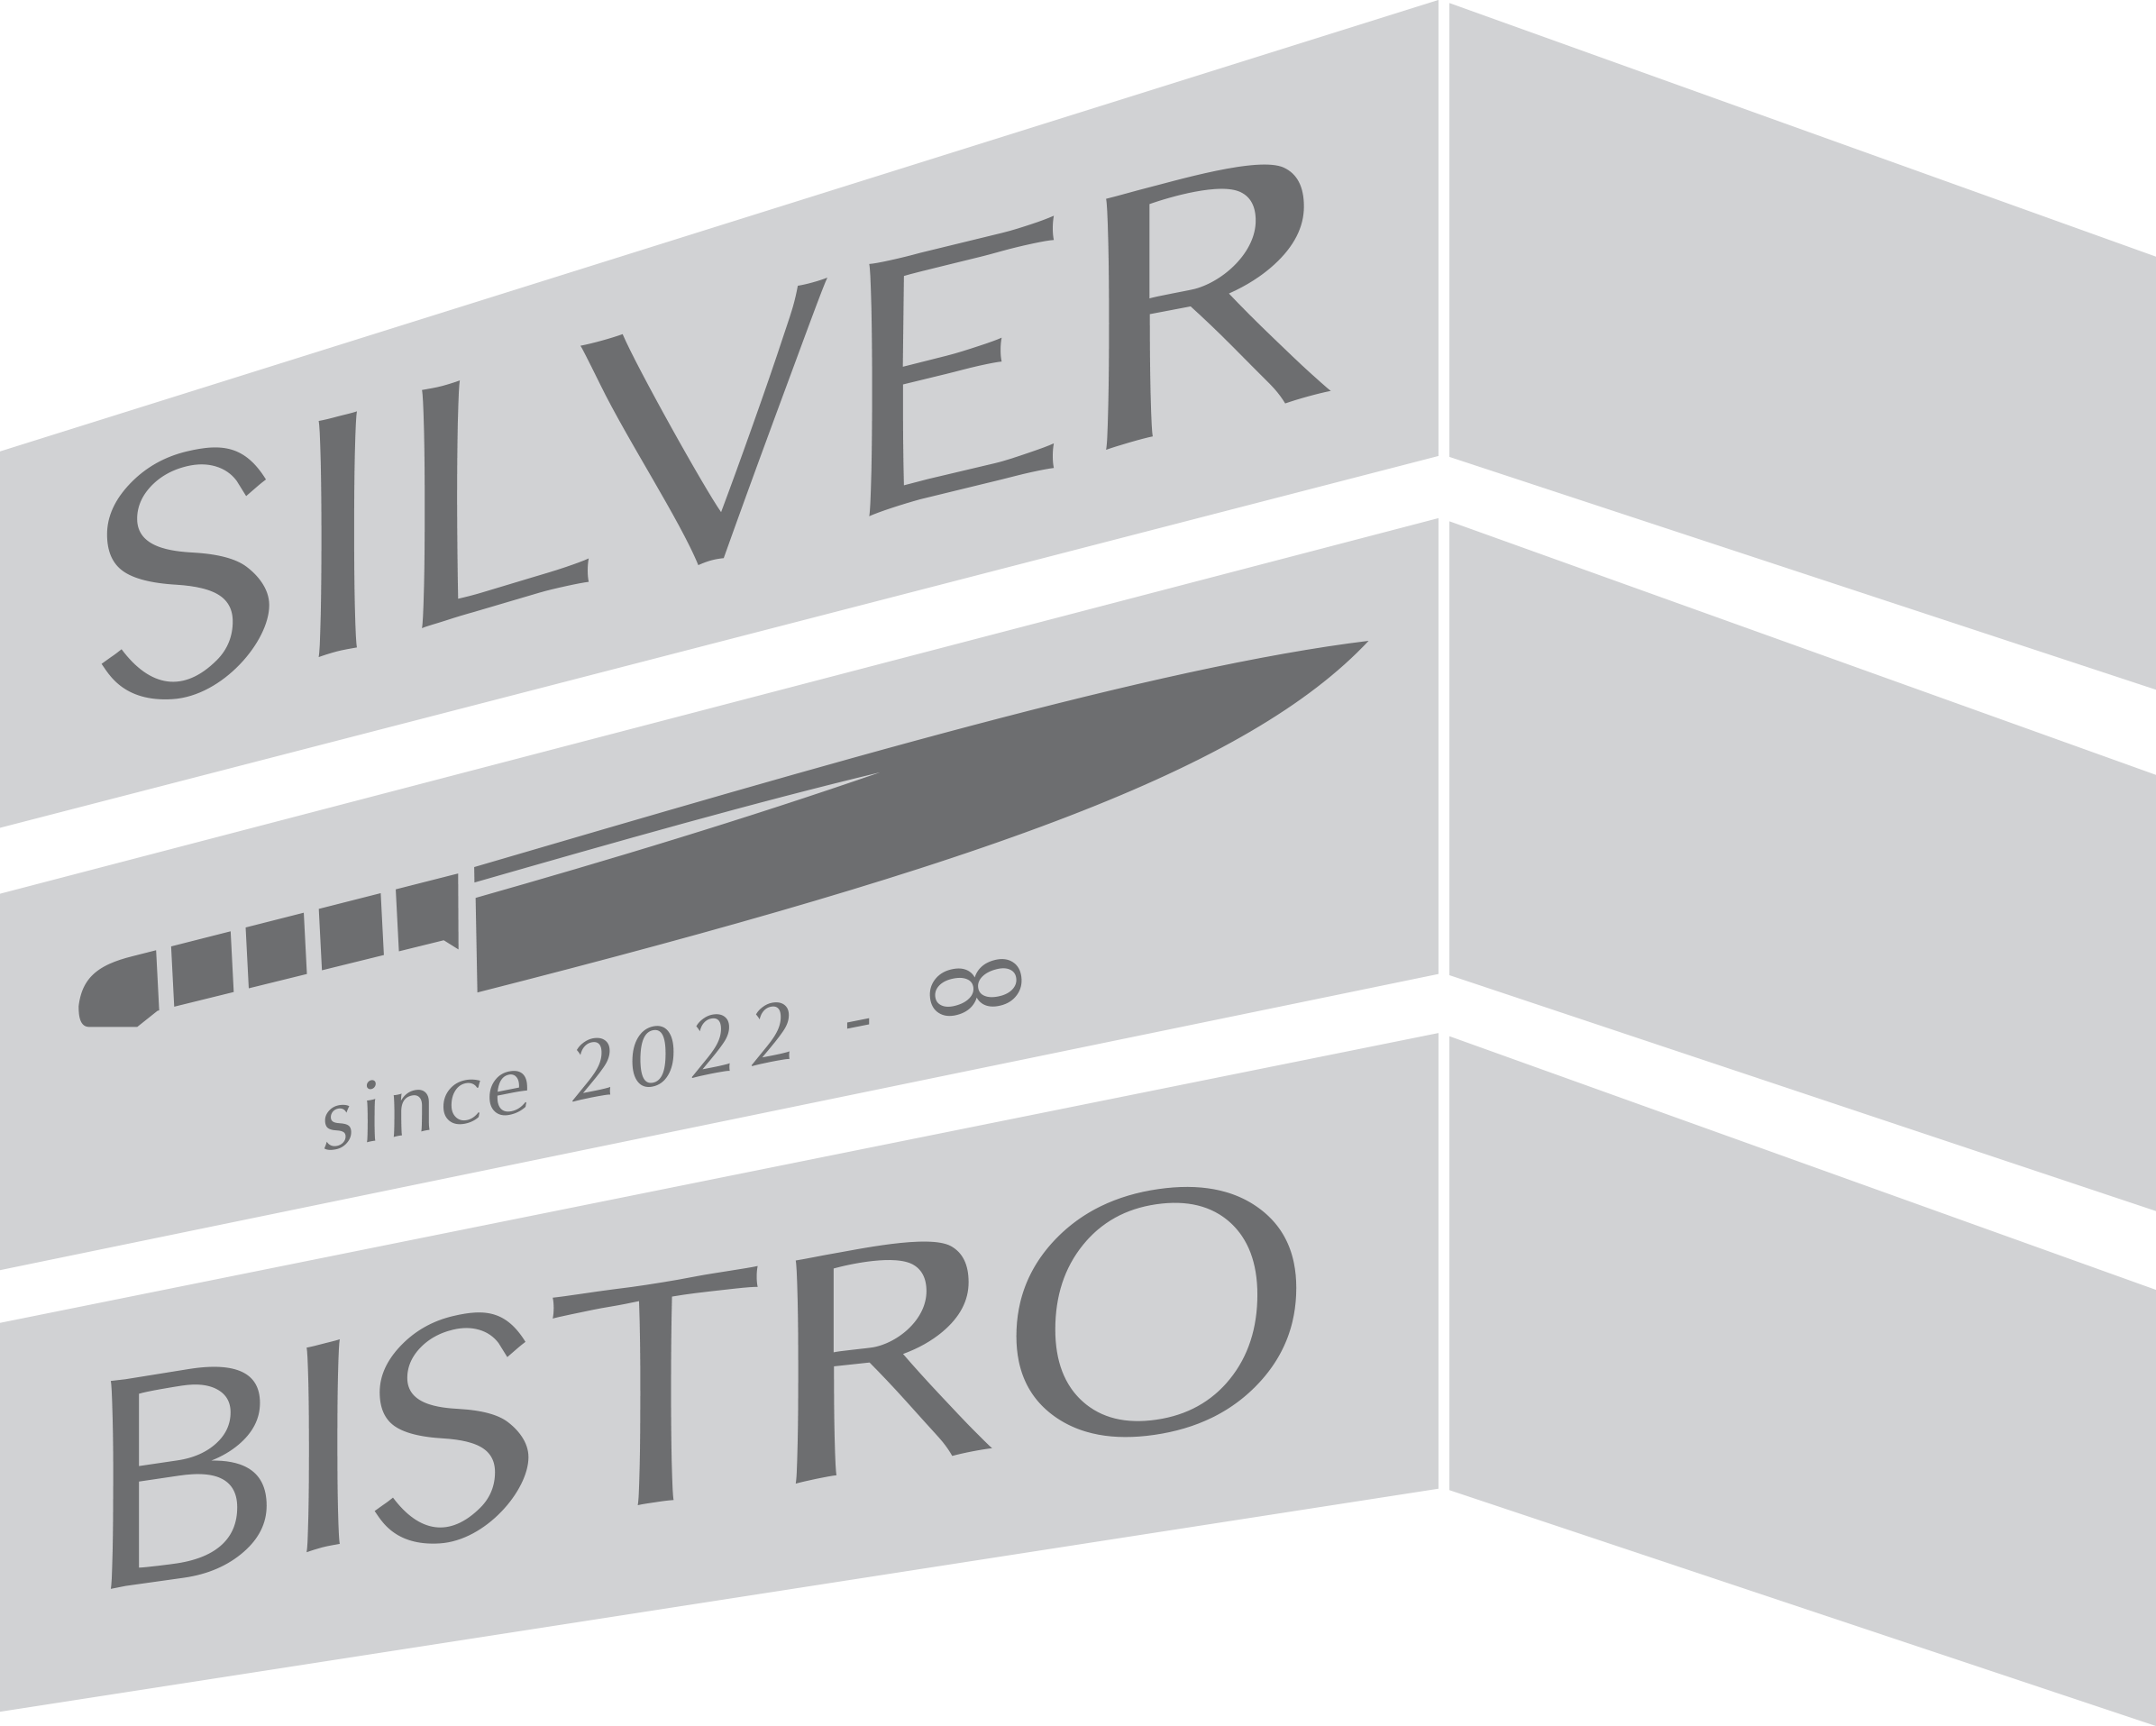 Silver bistro